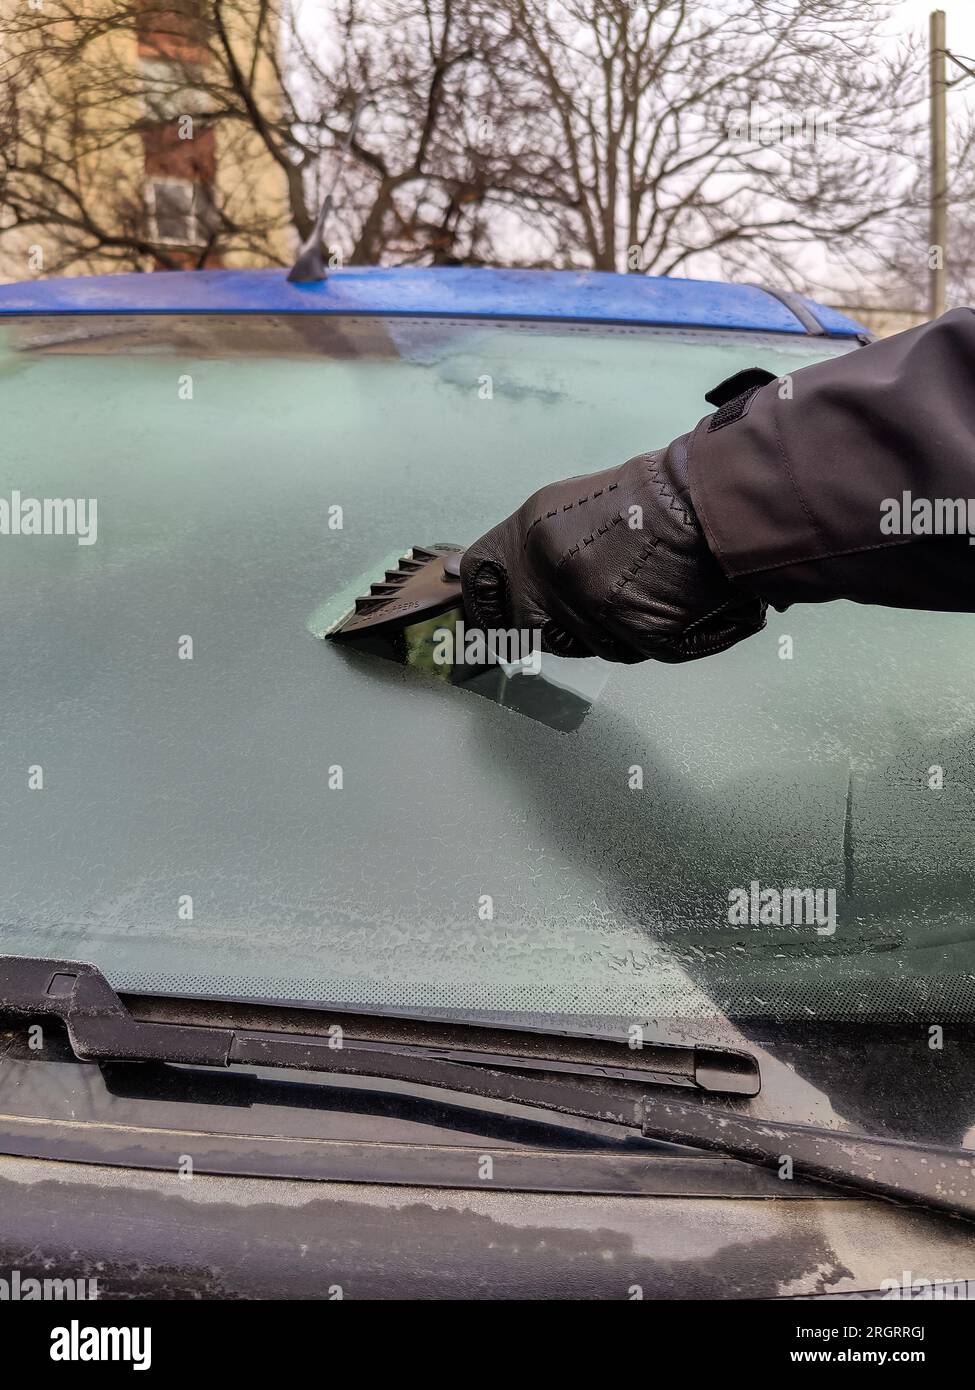 Autofenster im Winter reinigen. Der Mensch kratzt mit einem Plastikkratzer  von der Windschutzscheibe eines blauen Autos. Hand in schwarzem  Lederhandschuh im C Stockfotografie - Alamy